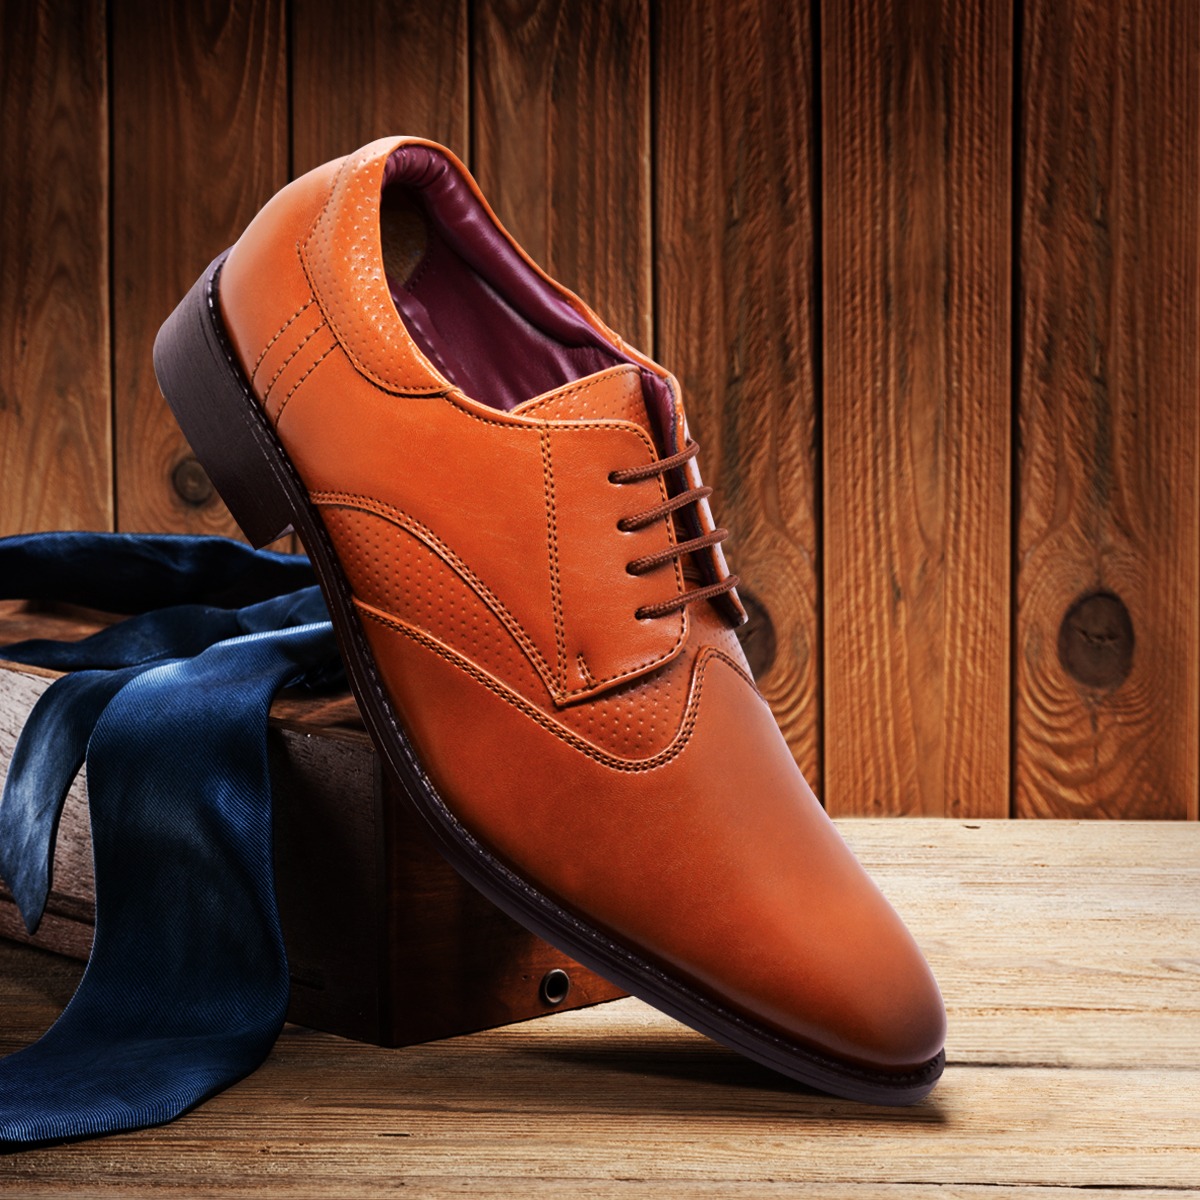 Shoes & Footwear: Shop Online Latest Footwear for Men, Women & Kids